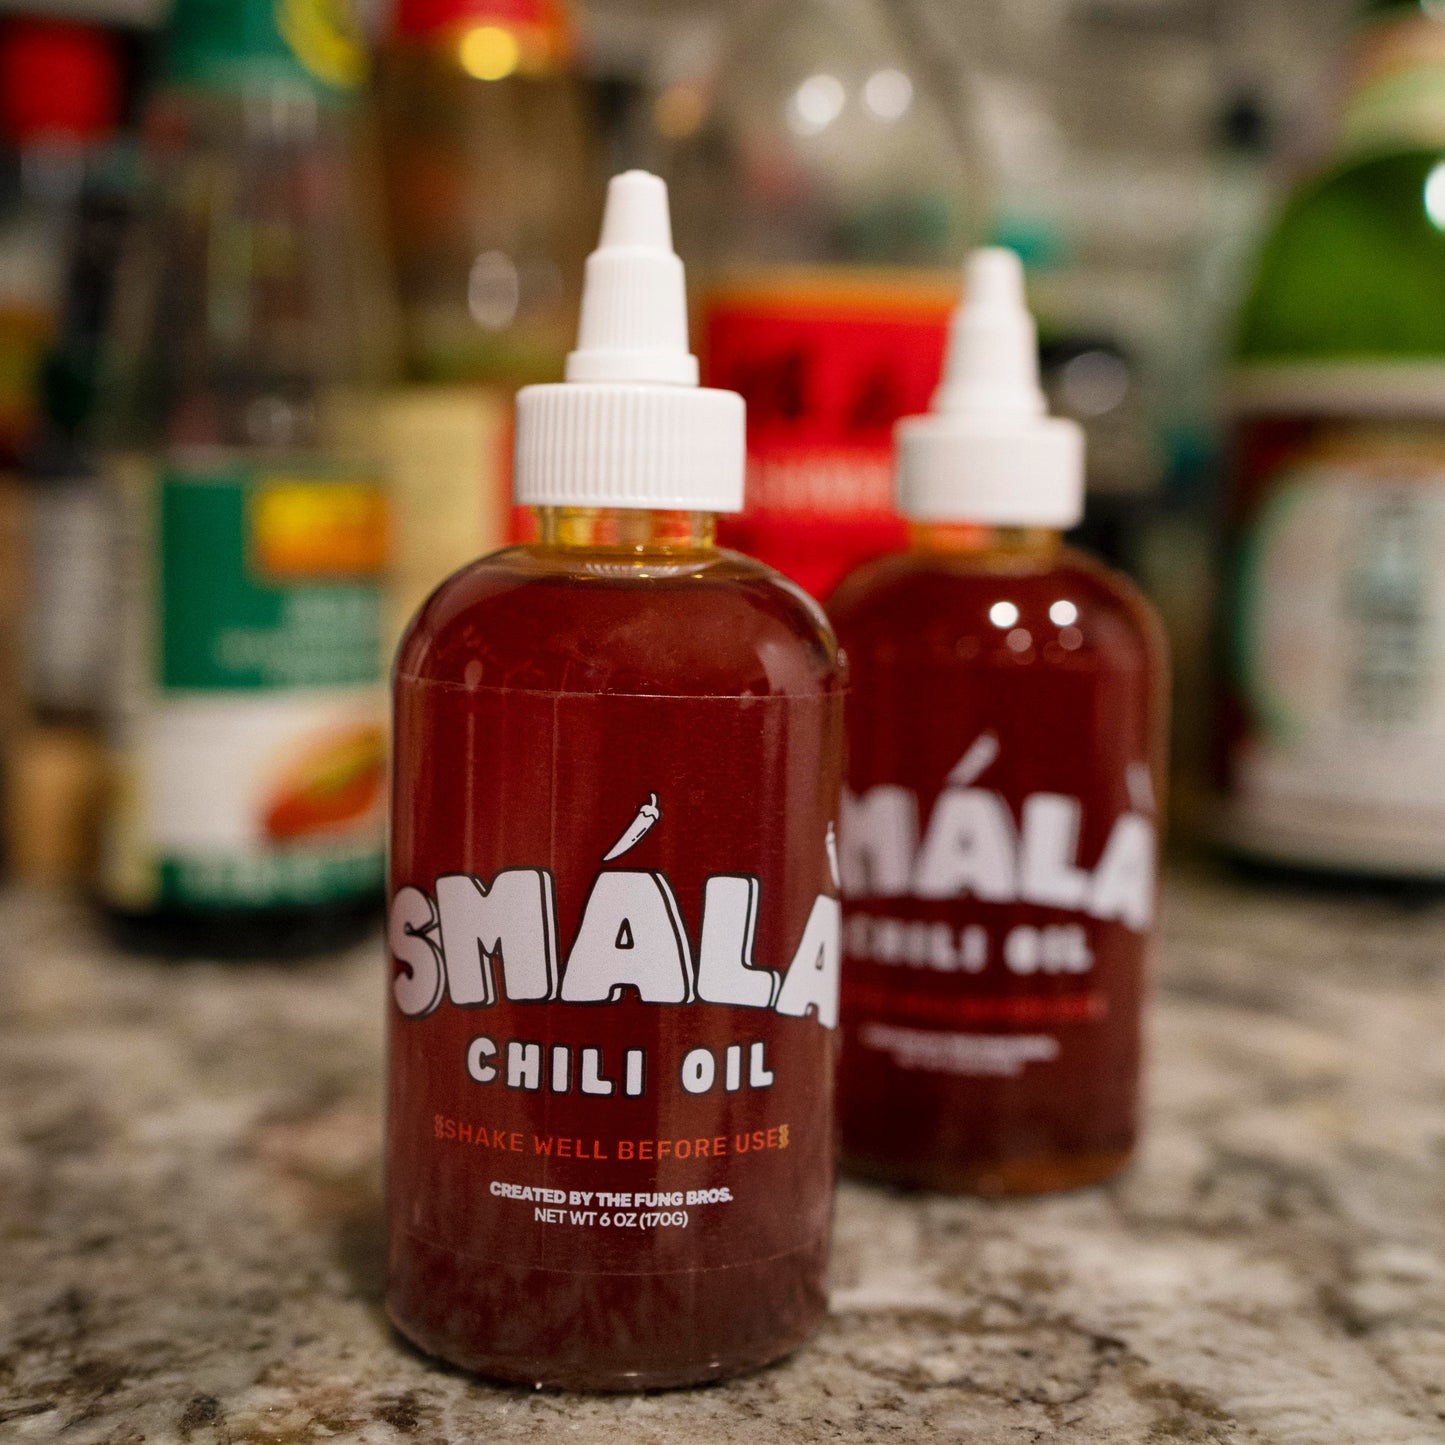 SMÁLÀ OG Chili Oil (2-Bottles)